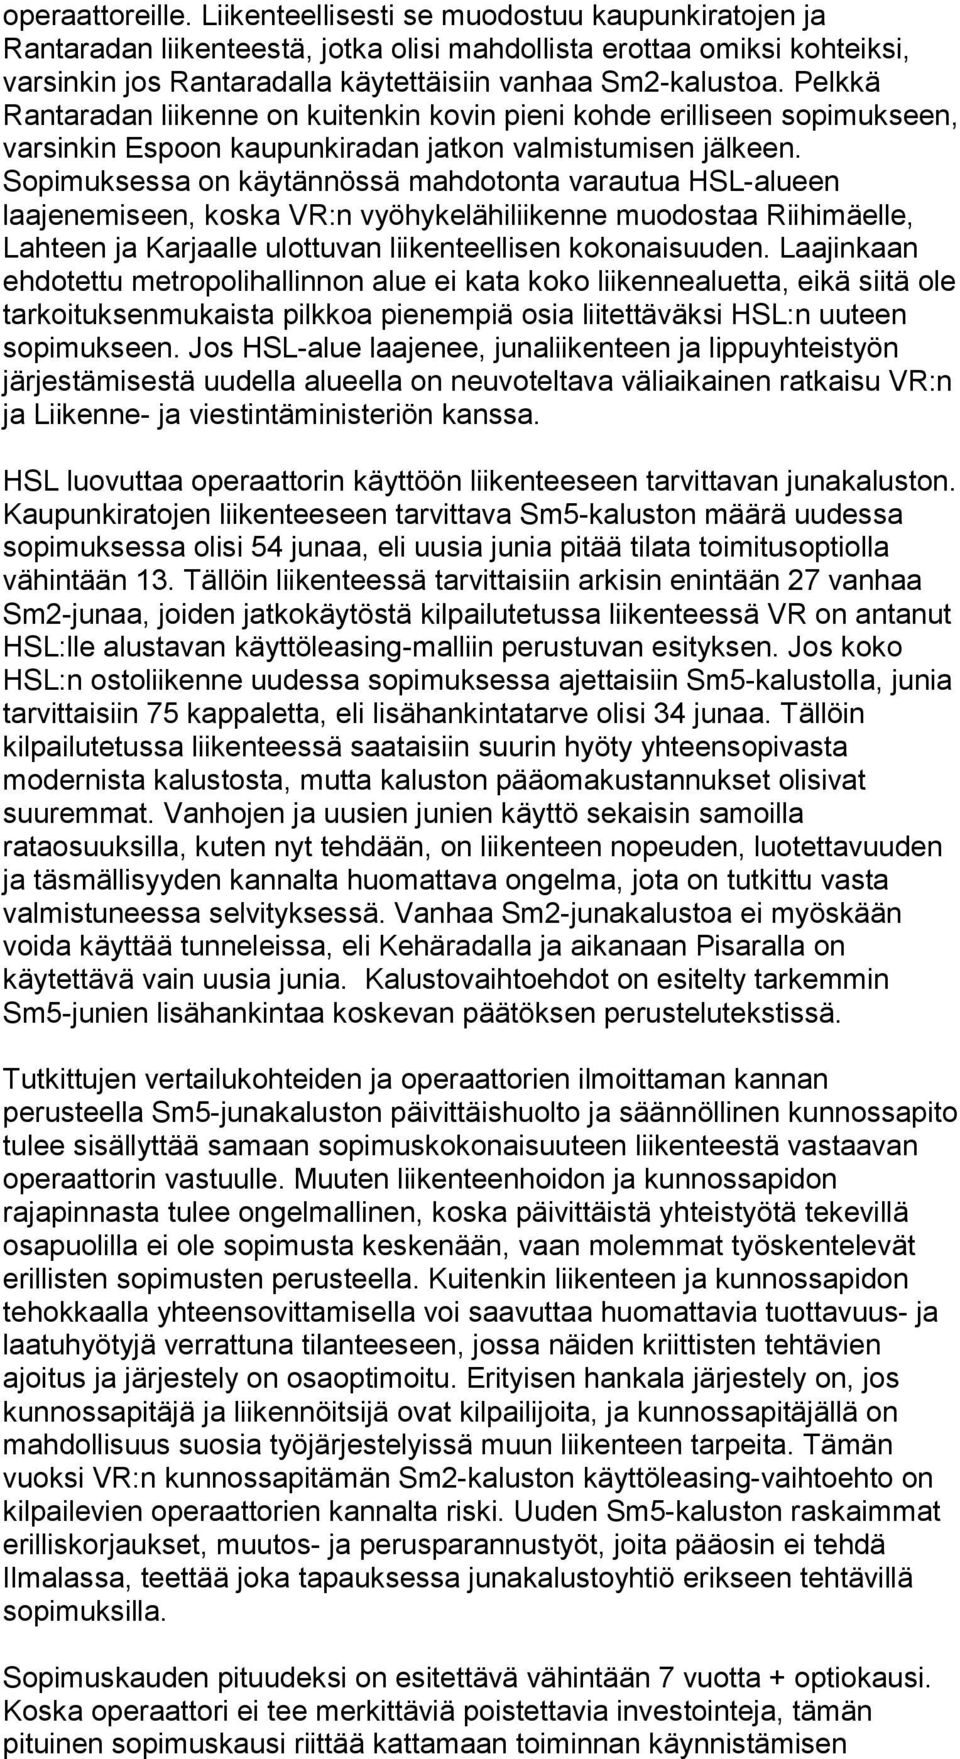 Pelkkä Rantaradan liikenne on kuitenkin kovin pieni kohde erilliseen sopimukseen, varsinkin Espoon kaupunkiradan jatkon valmistumisen jälkeen.